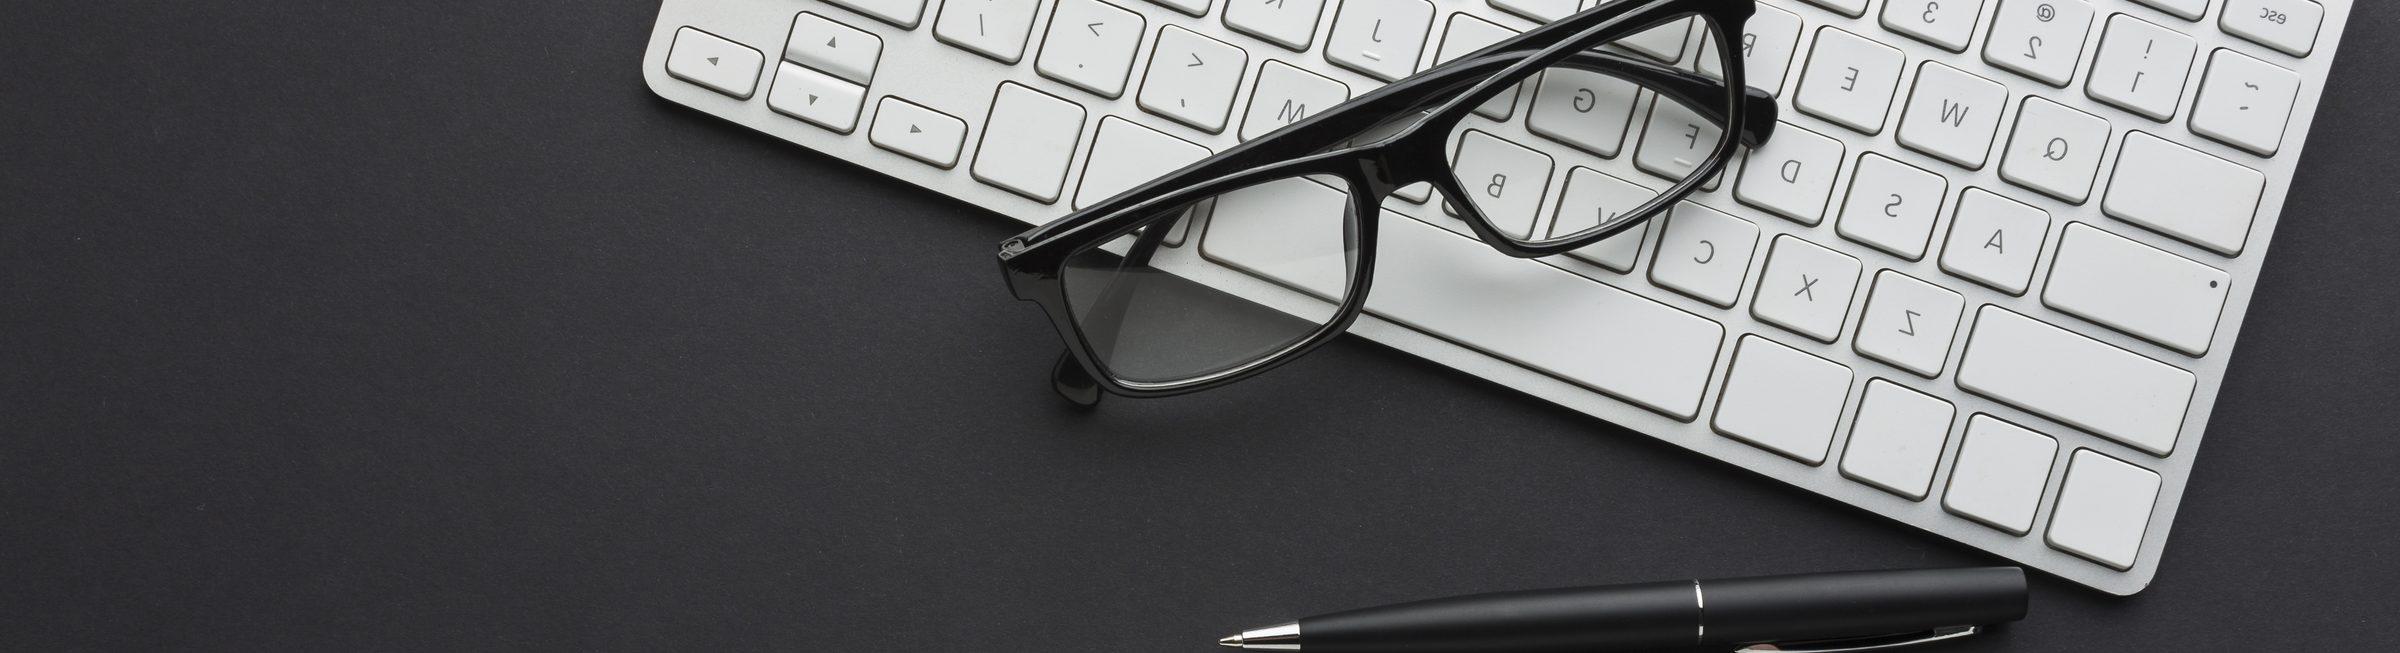 Un clavier, des lunettes et un stylo à bille